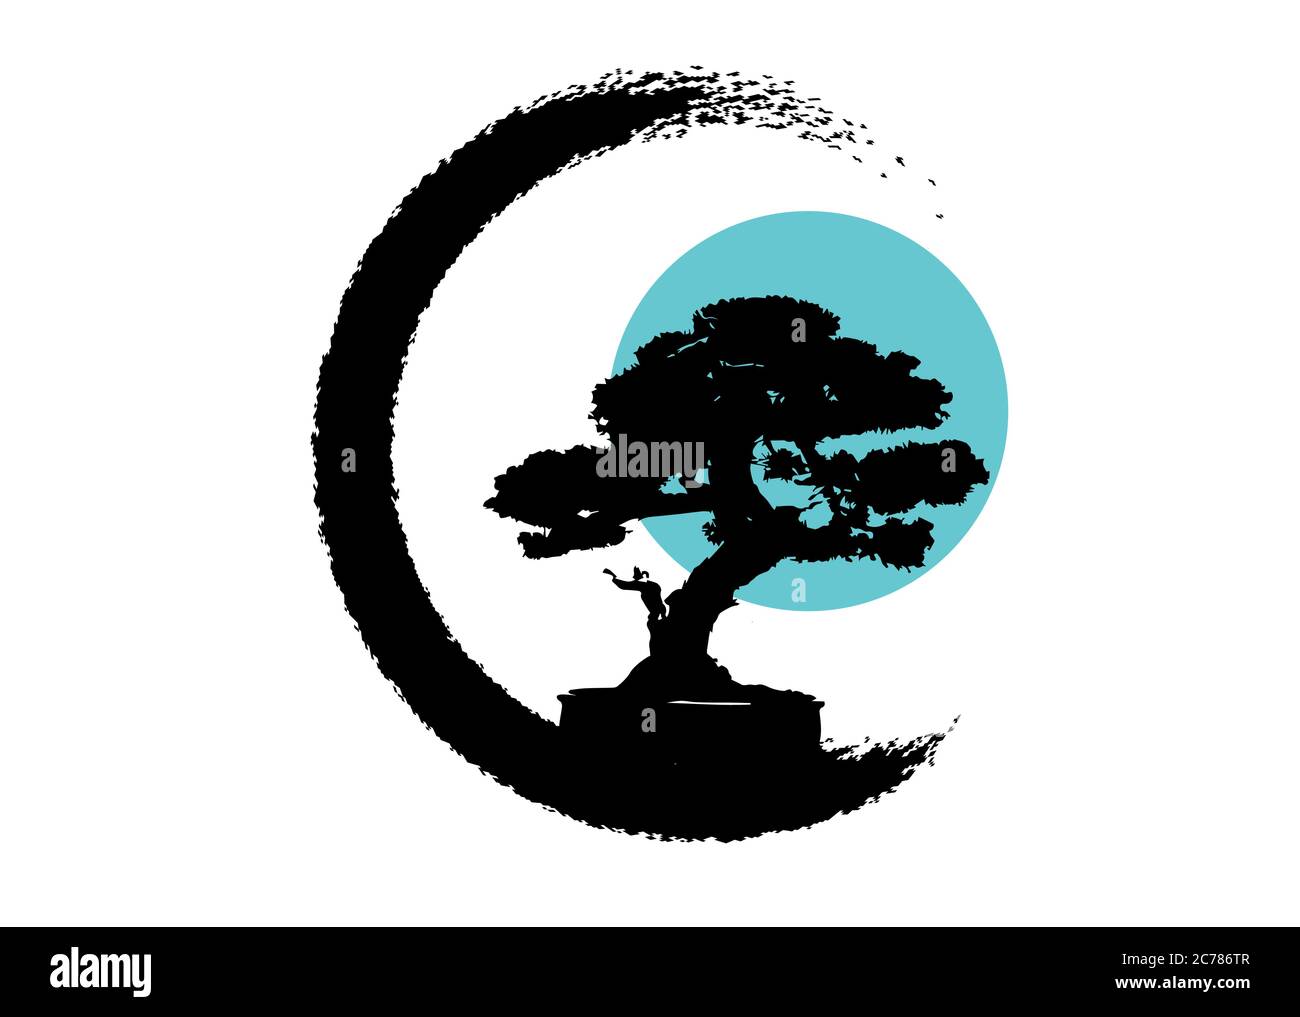 Logo bonsaï japonais, icônes de silhouette de plante noire sur fond blanc, silhouette écologique verte de bonsaï et lune bleue ou soleil. Image détaillée. Illustration de Vecteur